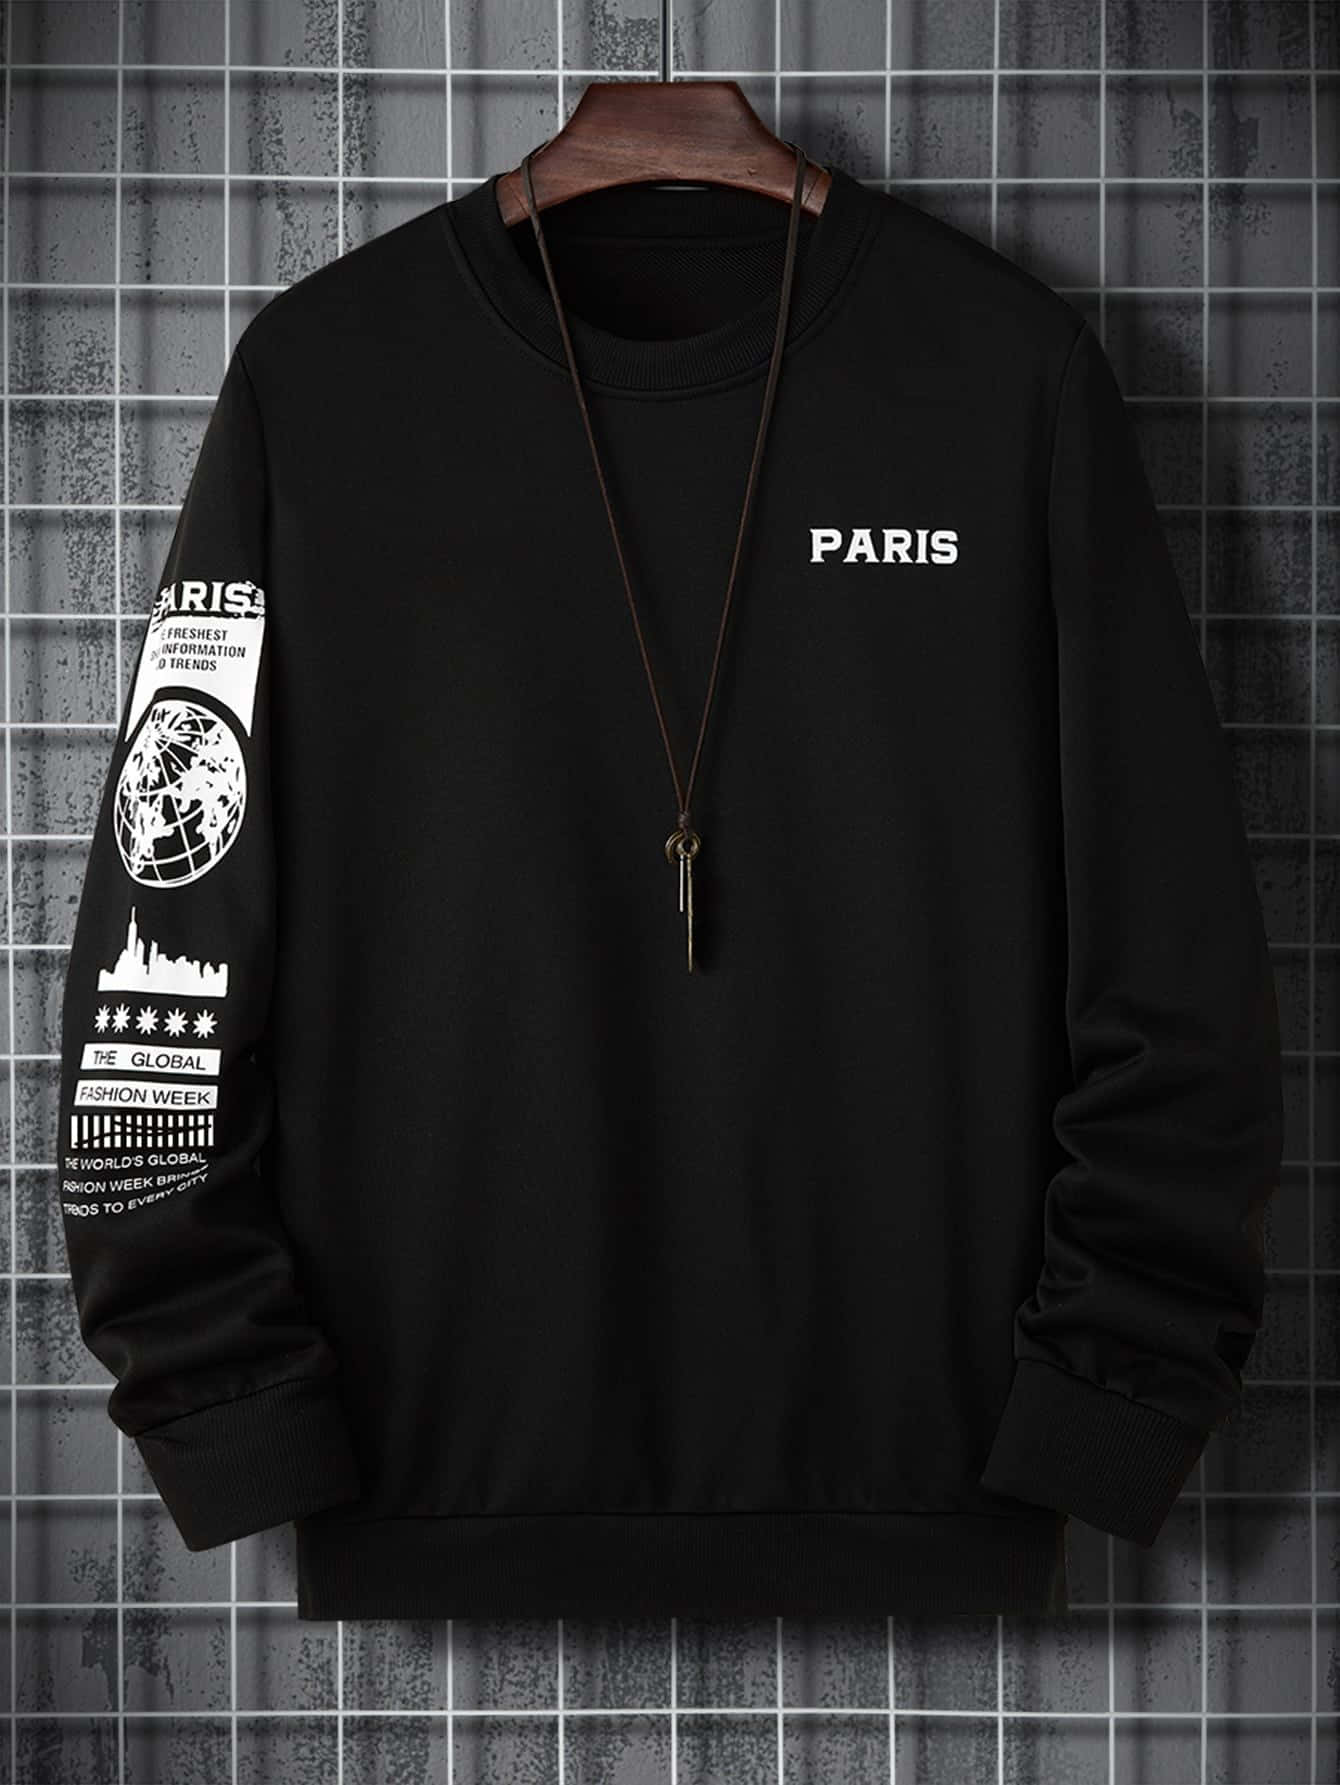 Ultra-loose black hoodie, Djab, Men's Hoodies & Sweatshirts